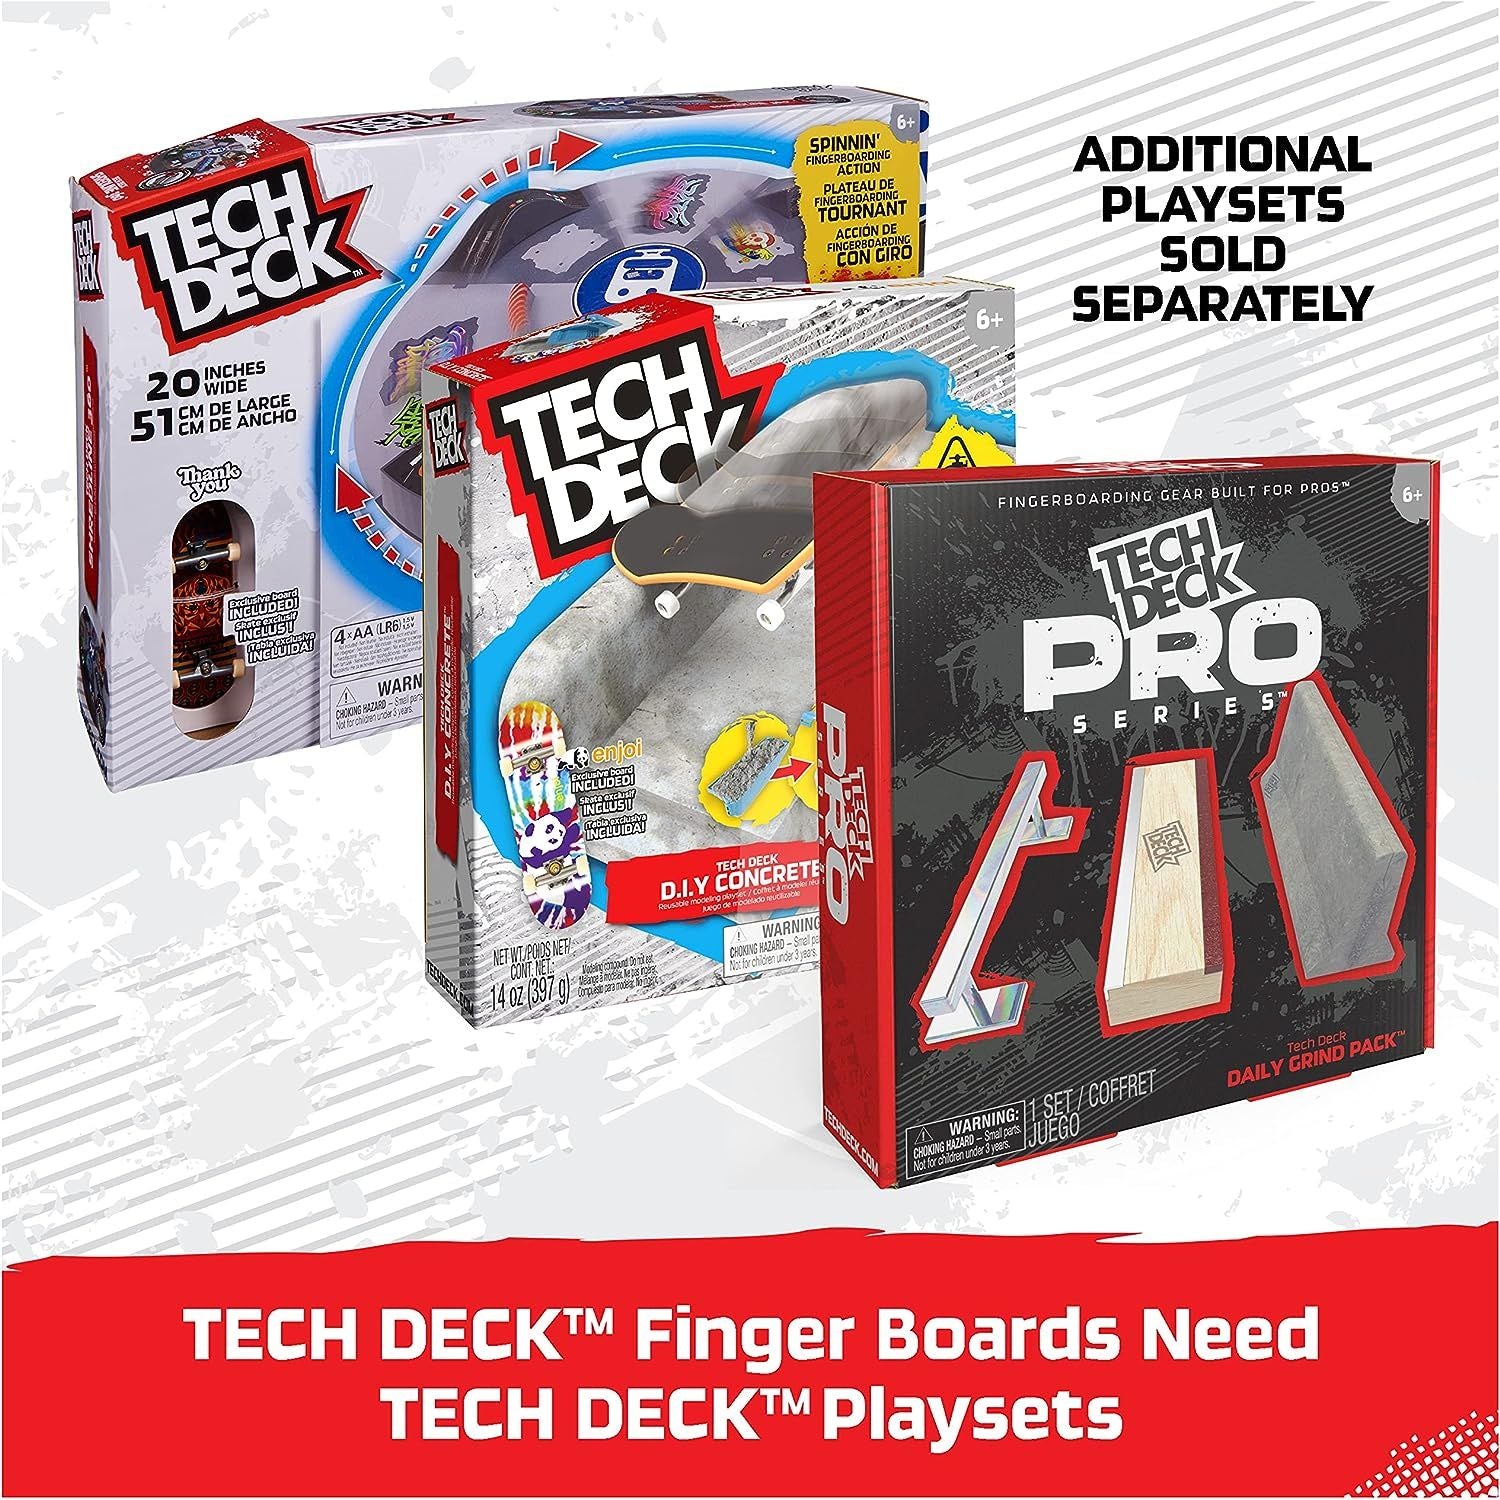 TECH DECK، DLX Pro 10 عبوات من لوحات الأصابع القابلة للتجميع، لمحبي التزلج